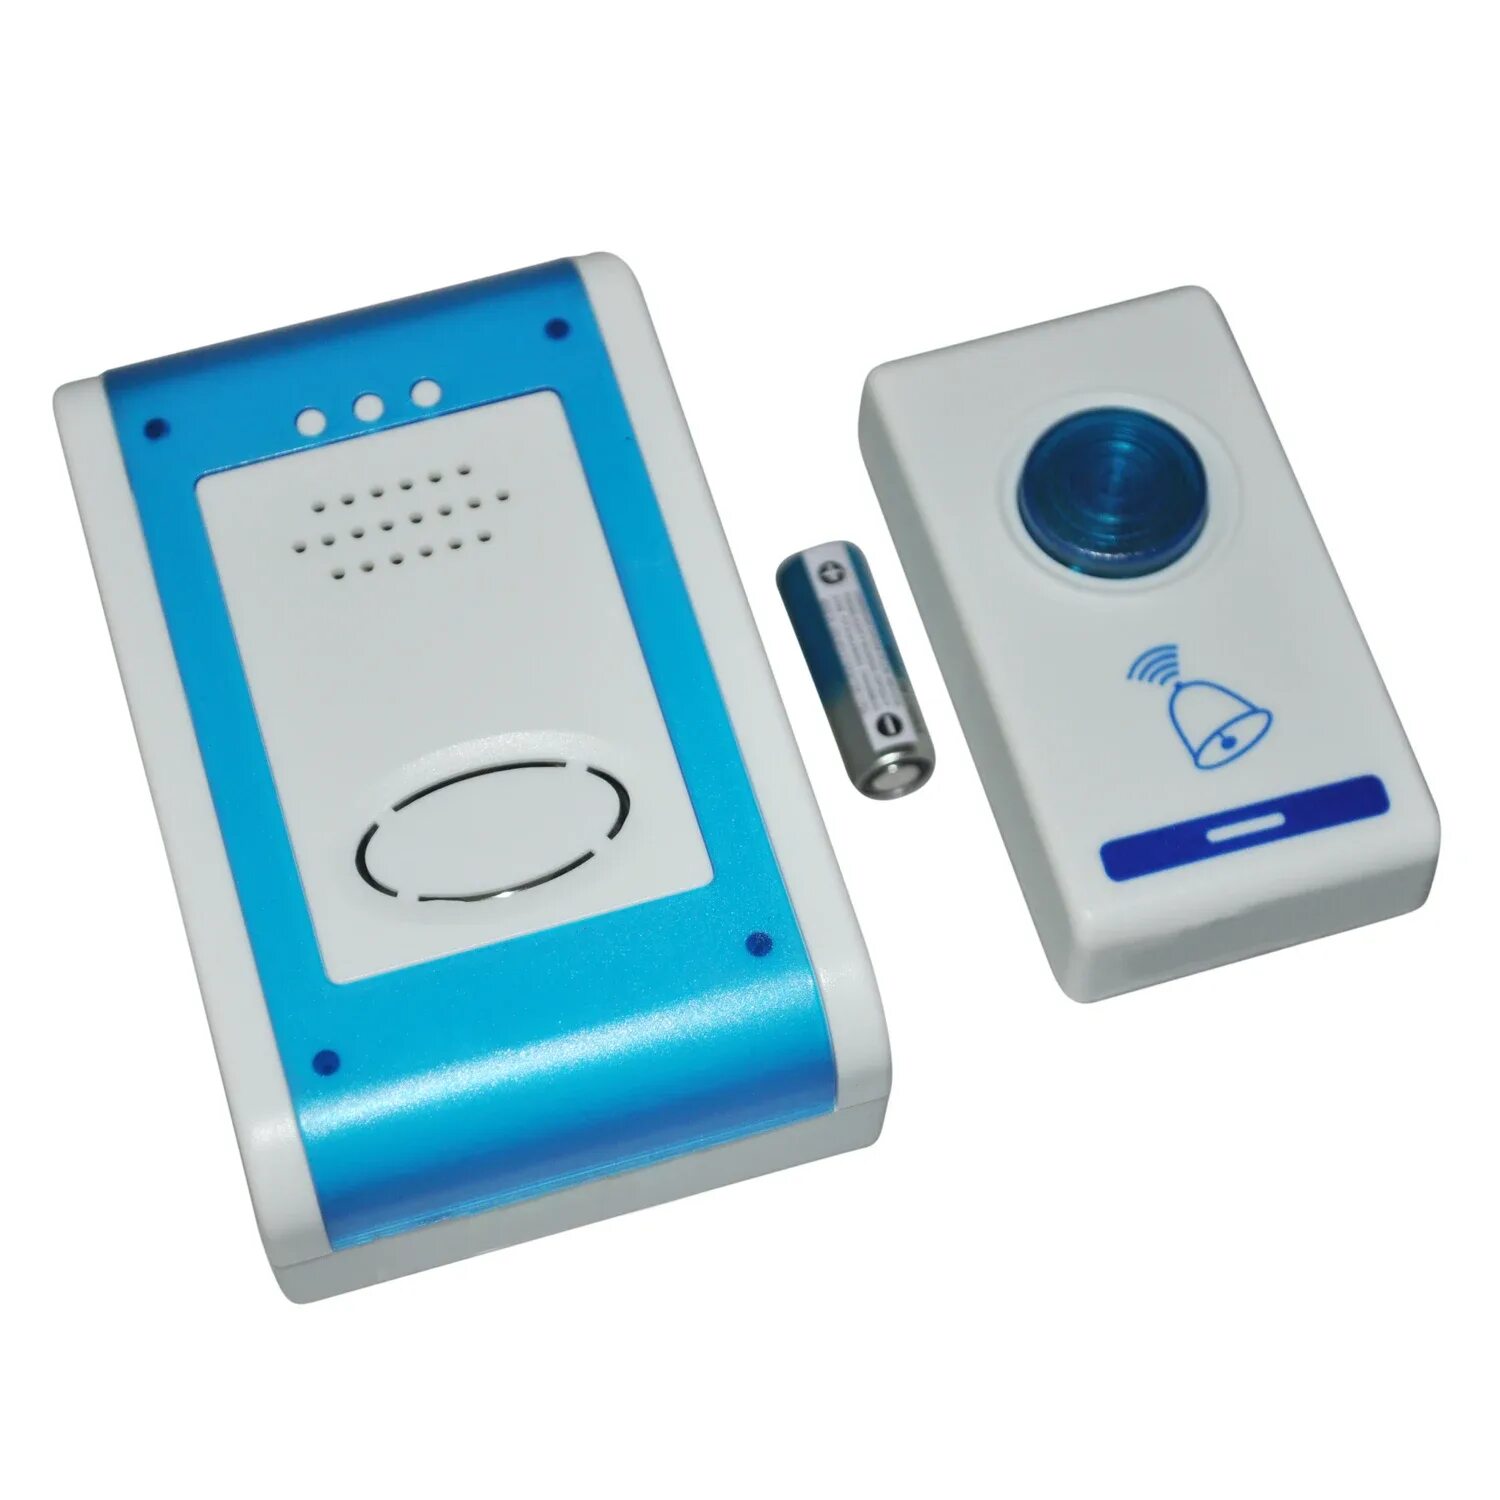 Звонок на дверь проводной. Дверной звонок ( model h8528 ). Звонок беспроводной уличный влагозащищенный ip65. Дверной звонок ф aieran Doorbell Remote Control. Дверной звонок Дистанционное Luxram.